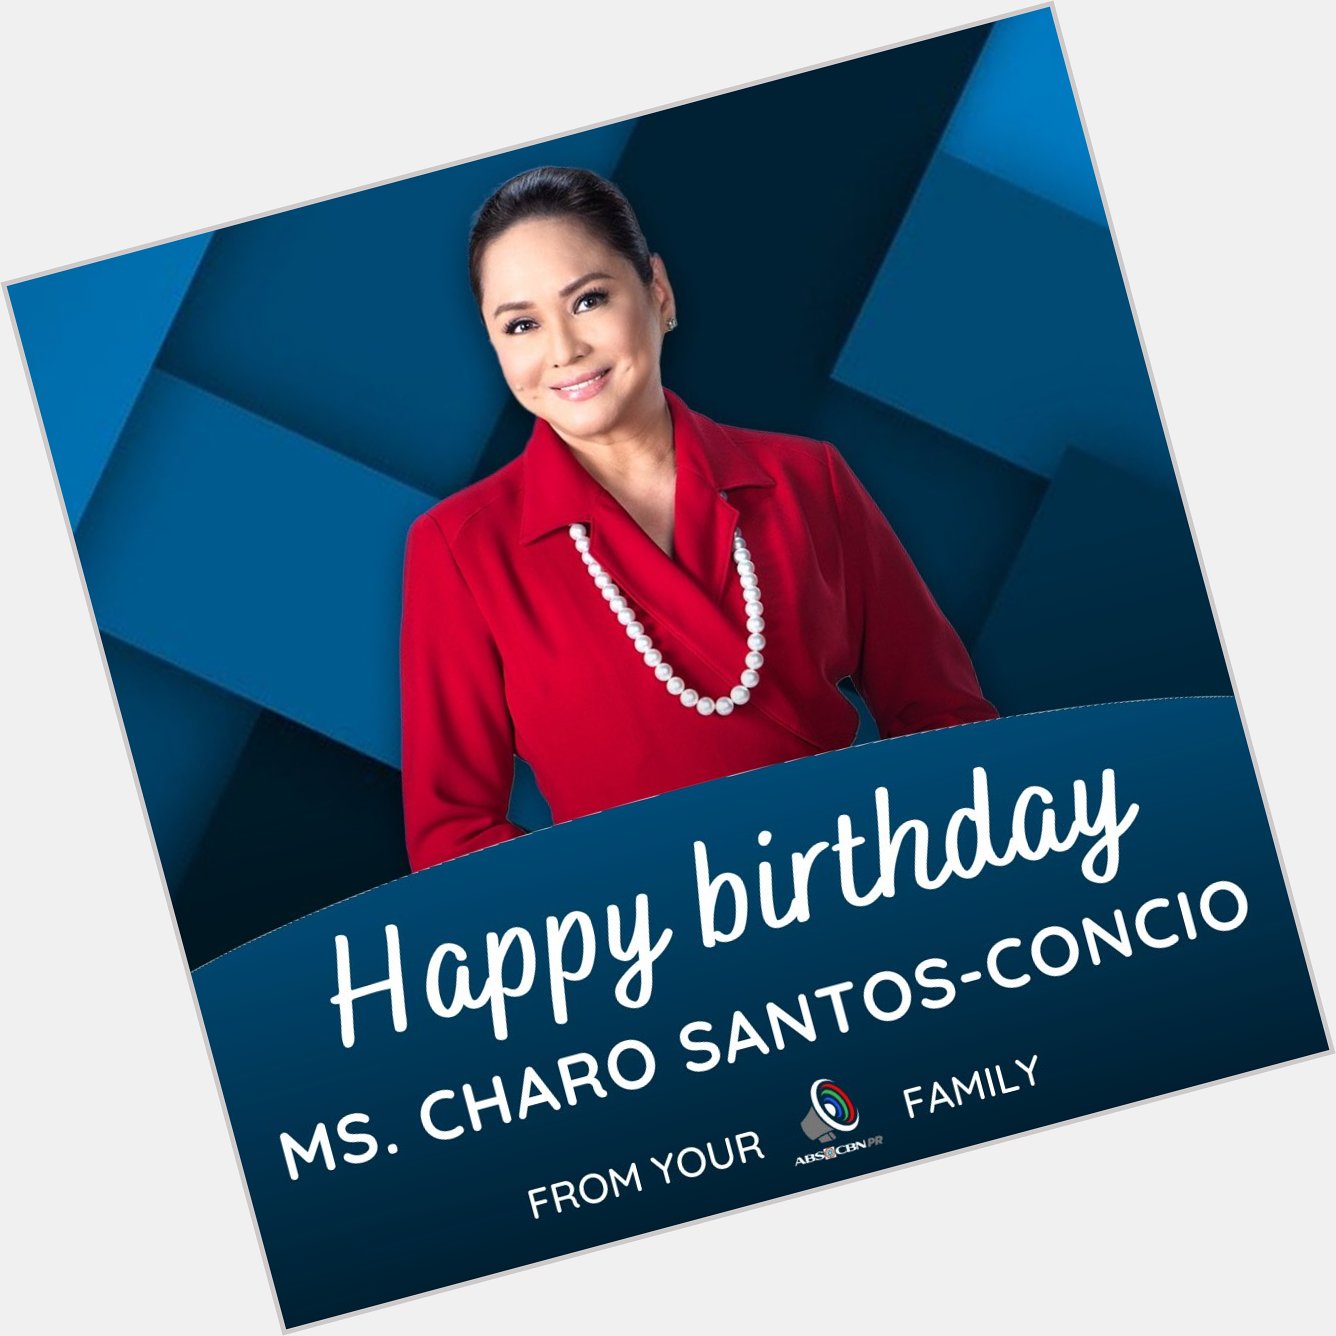 Happy birthday Ms. Charo Santos-Concio!     